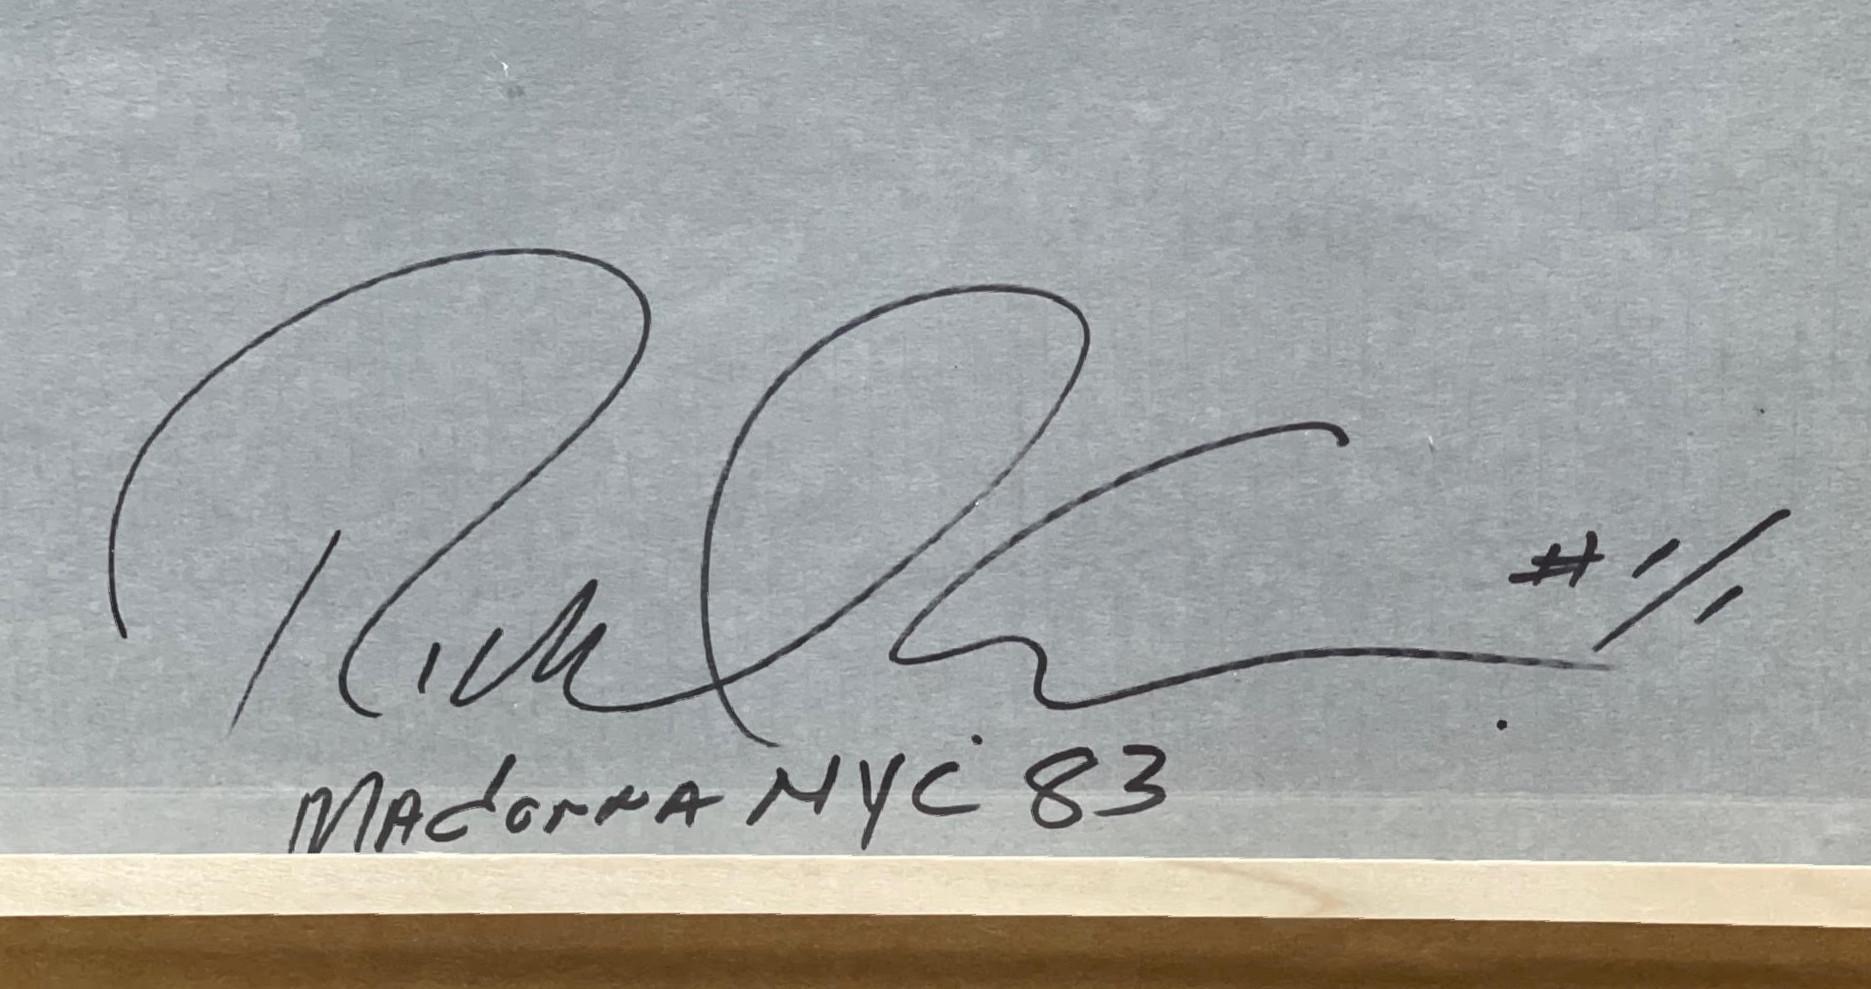 Richard Corman
Madonna NYC '83 (signé et numéroté 1/1 par le photographe au recto et au verso), 2010
Tirage photographique noir et blanc sur papier pigmentaire d'archives
Signé à la main, titré et numéroté 1/1 au recto et au verso (signé deux